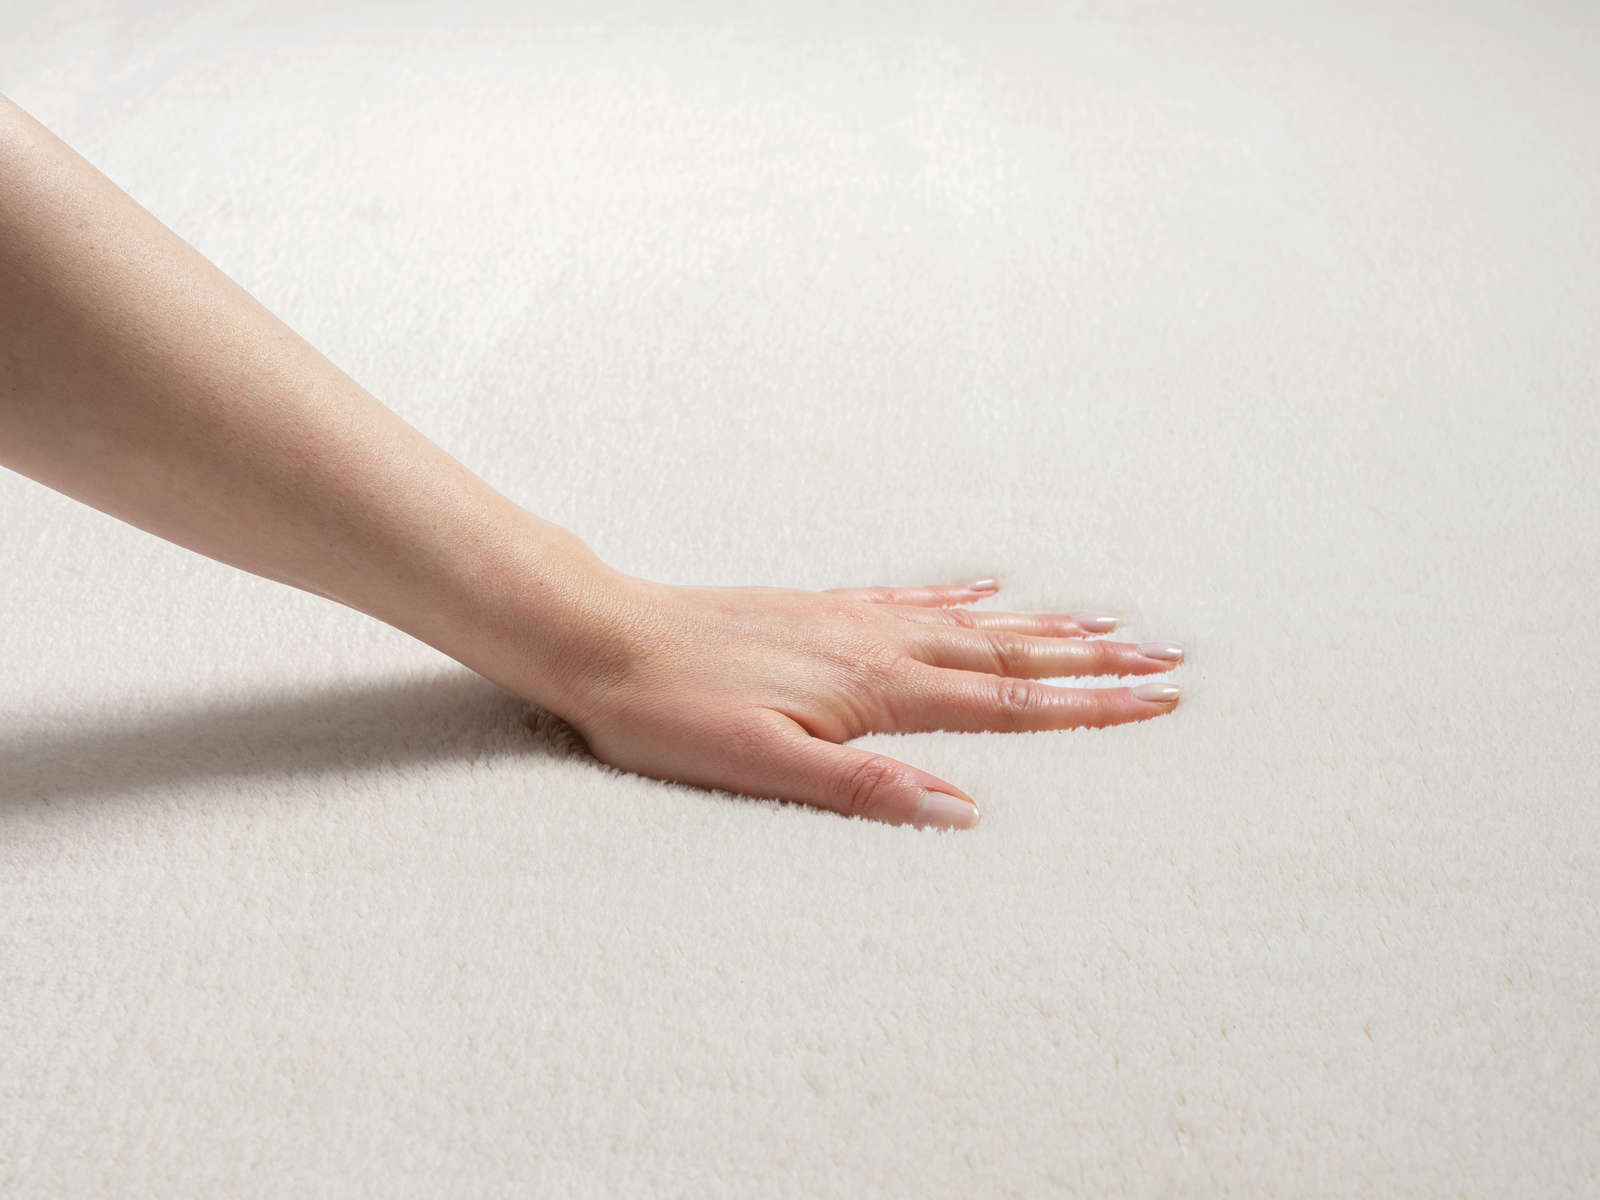             Fashionable high pile carpet in cream - 110 x 60 cm
        